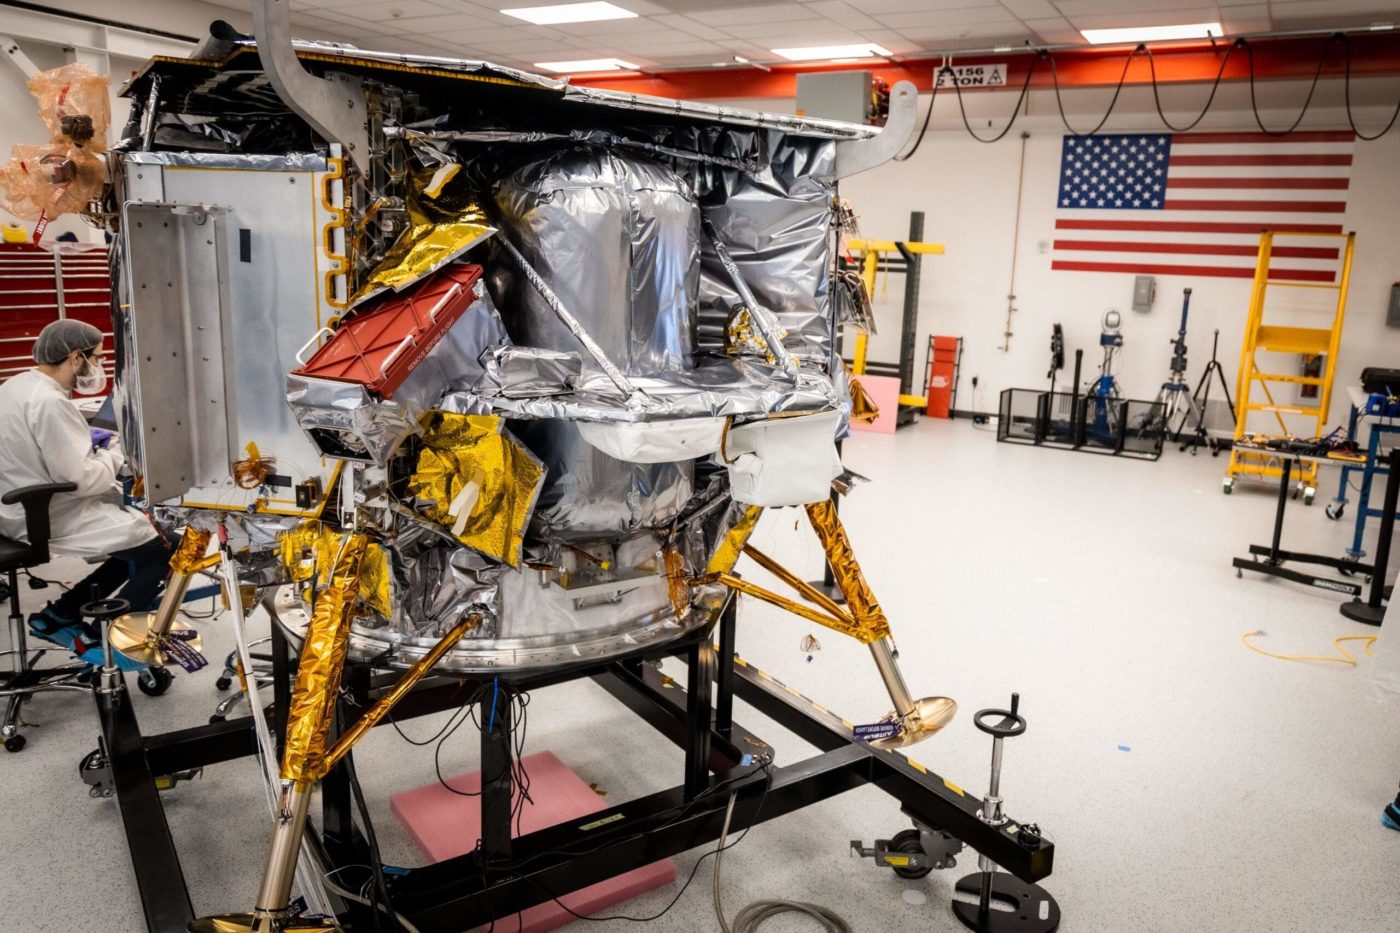 НАСА объявило новое место посадки на Луну посадочного модуля Peregrine